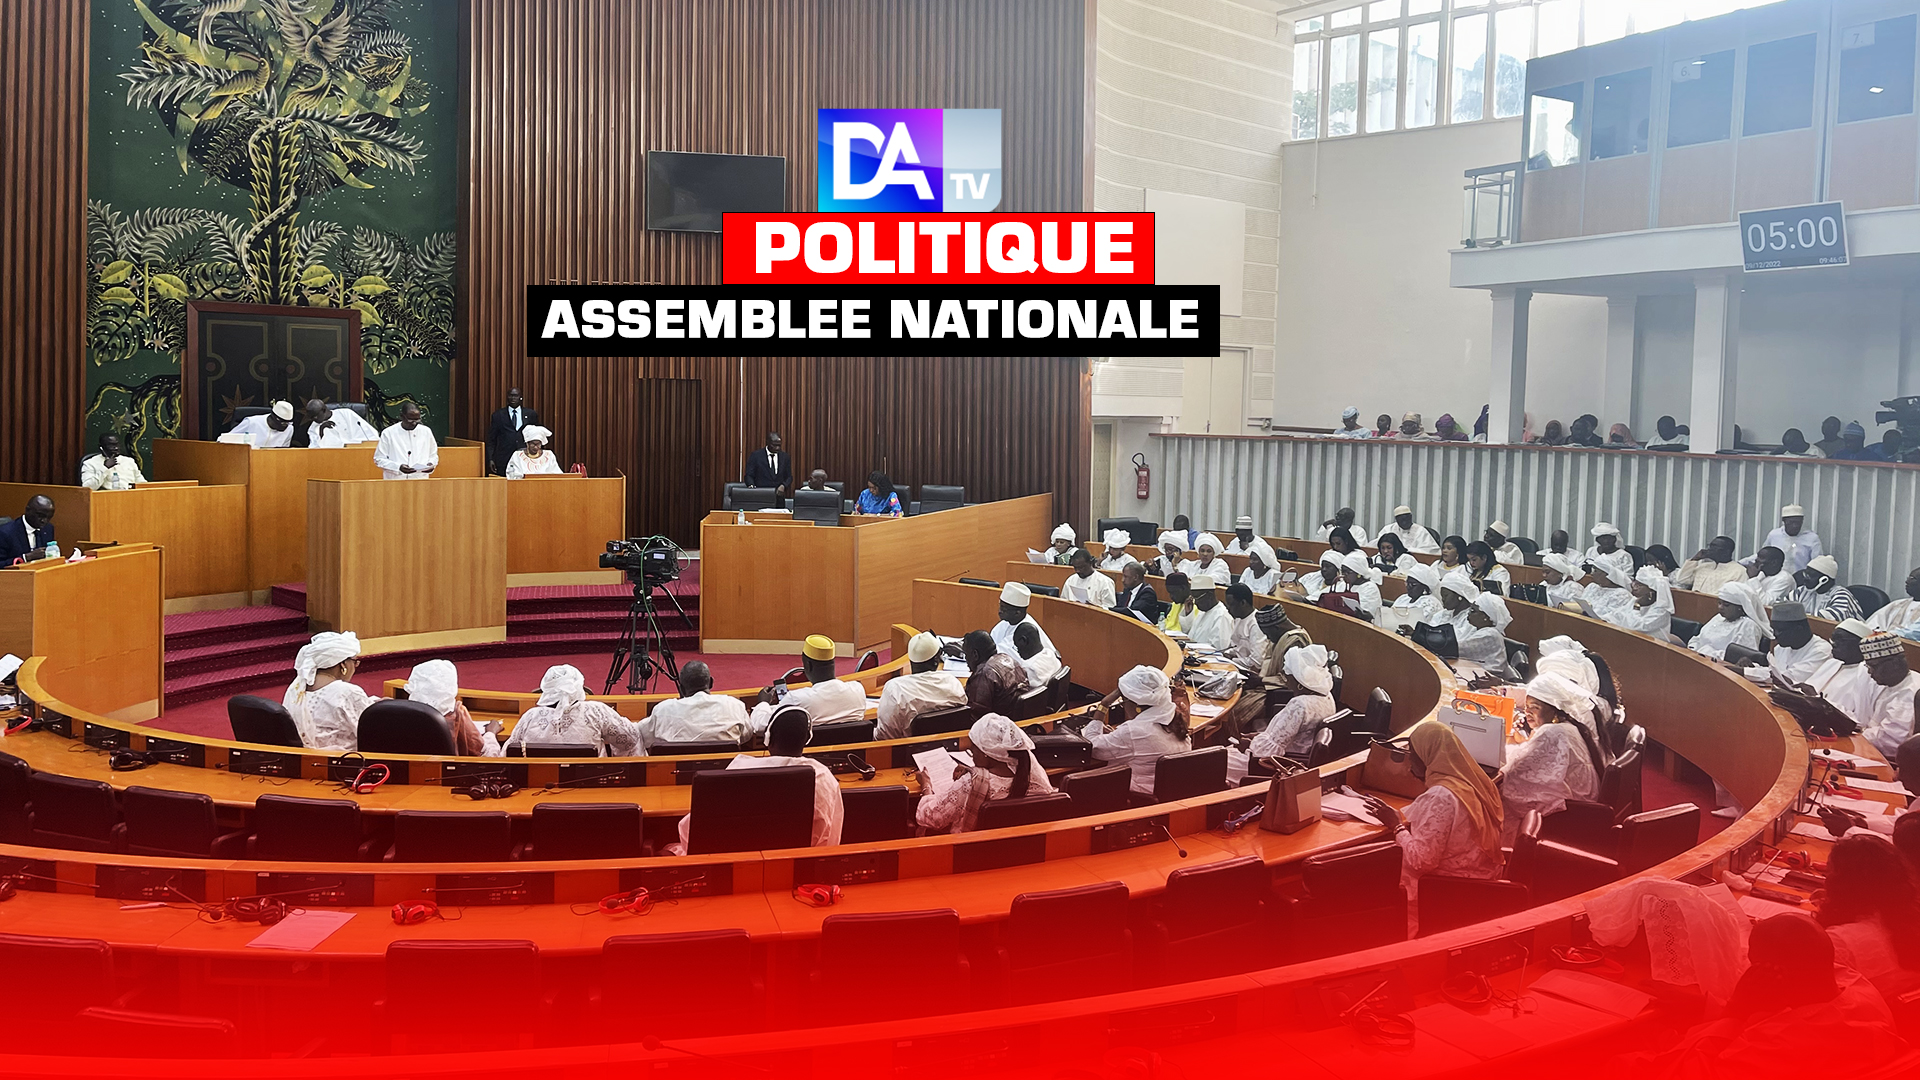 Assemblée nationale : Le message de paix des députés de Benno tous en blanc